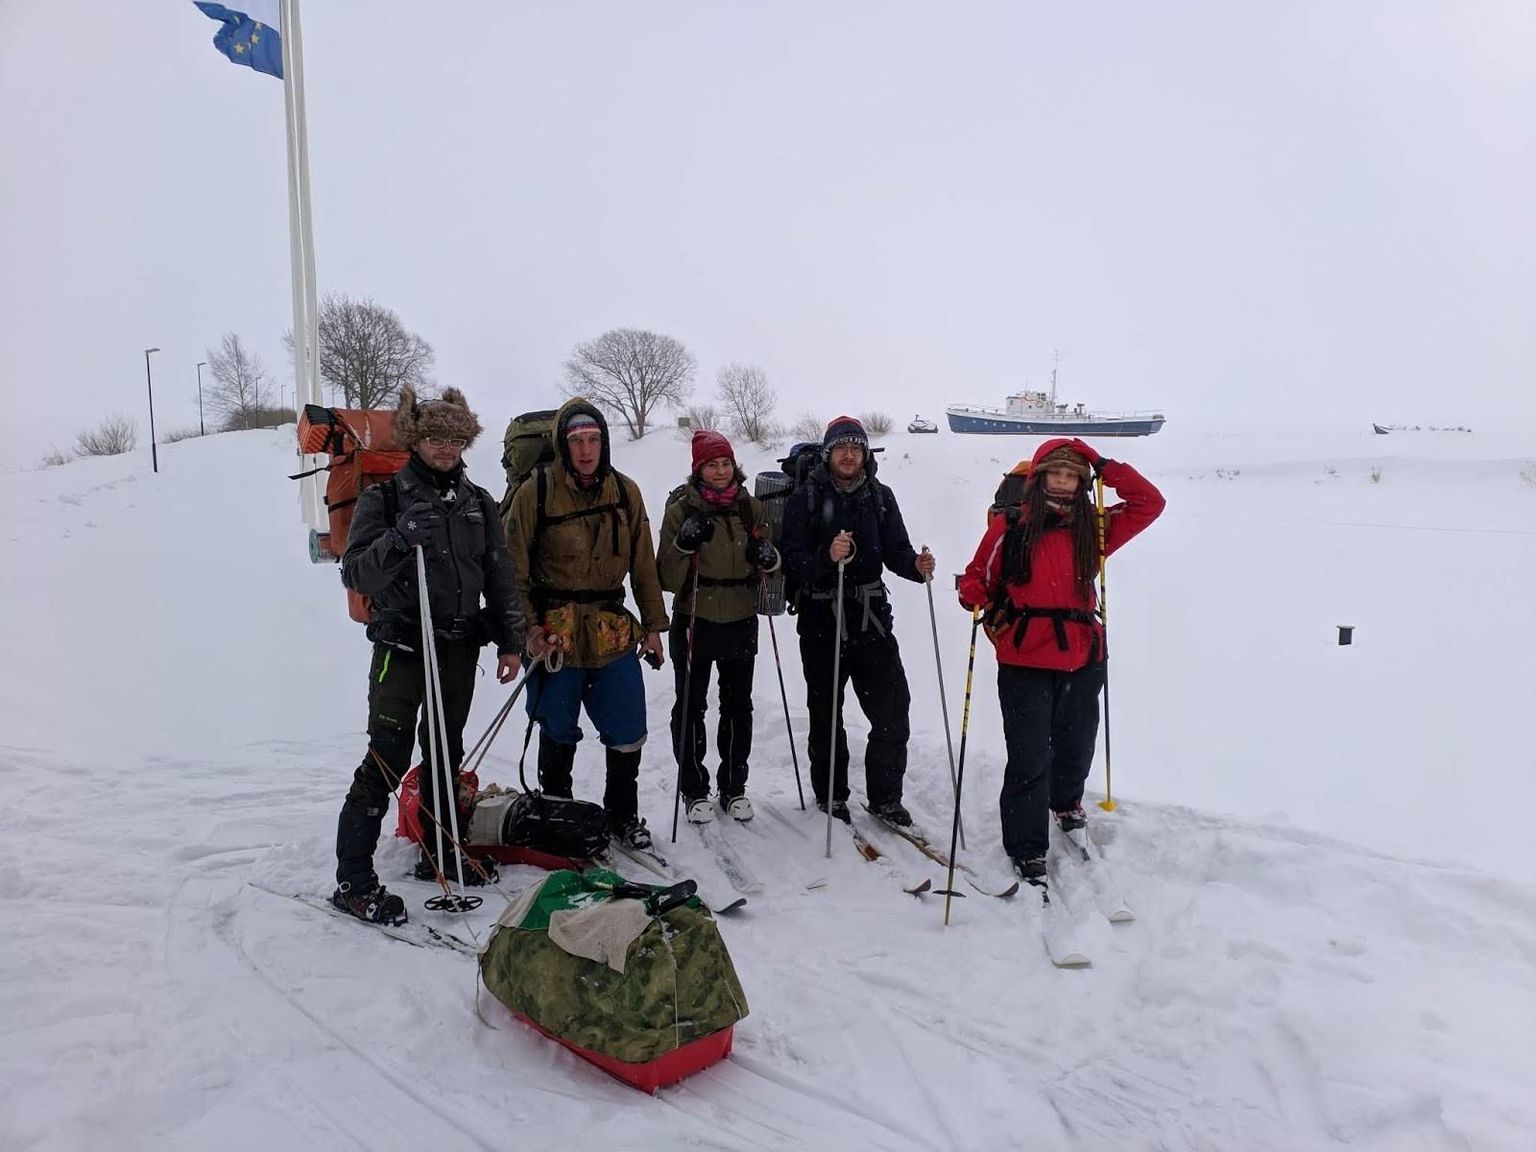 Uljad matkasellid võtsid Tartu üliõpilaste looduskaitseringi eestvedamisel ette suusaretke risti läbi Eesti, läbides kahe nädalaga teekonna Peipsi järve äärest Mustveest Lääneranna valda.